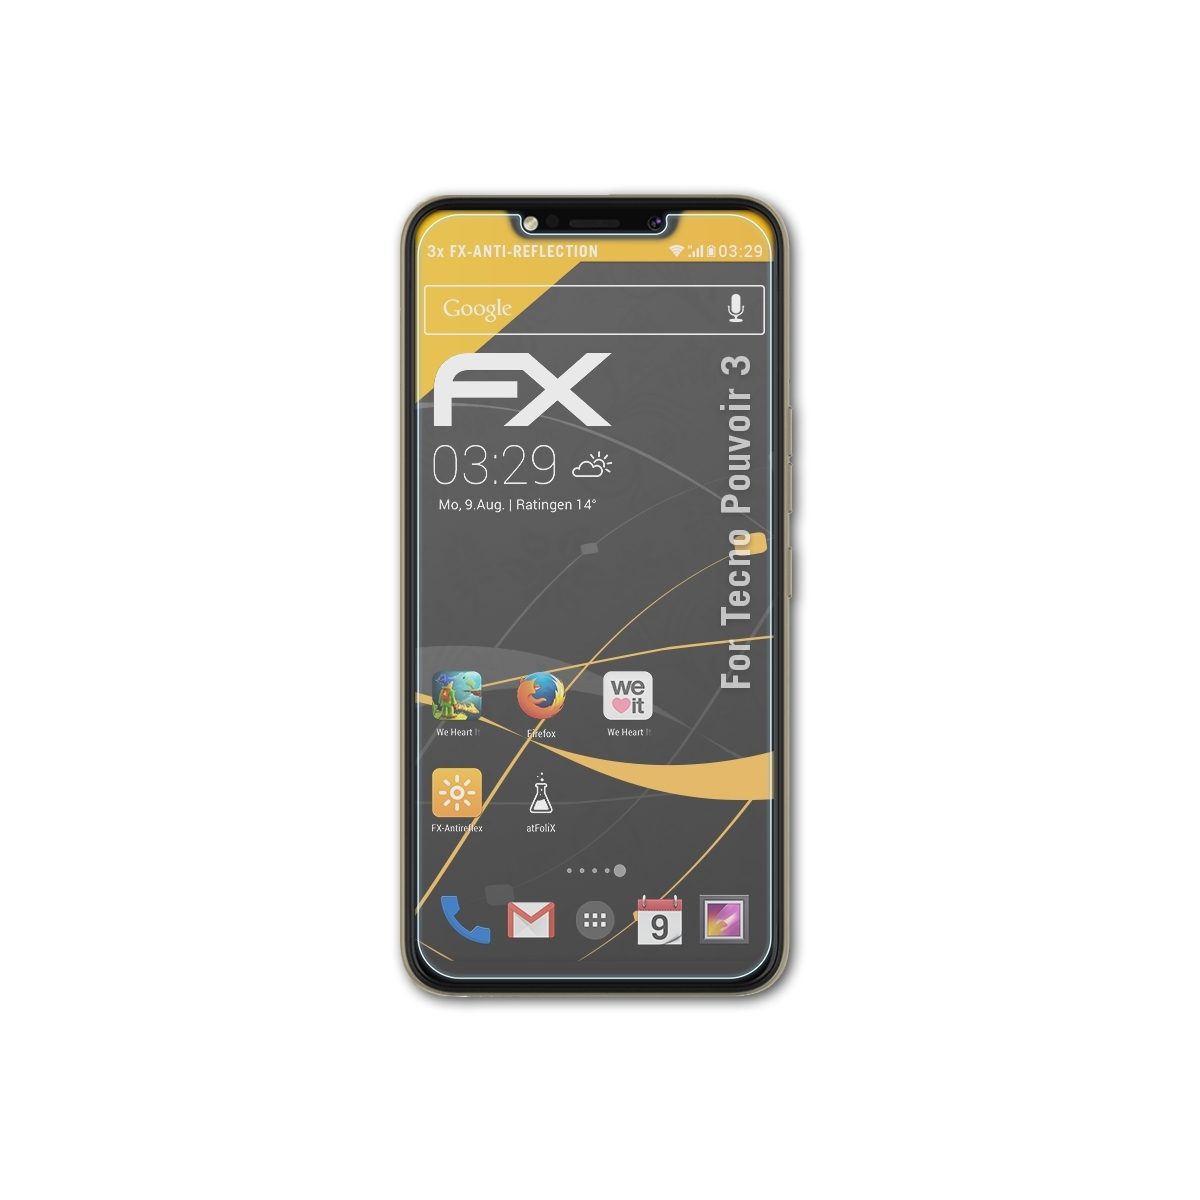 ATFOLIX 3x FX-Antireflex Pouvoir Displayschutz(für Tecno 3)